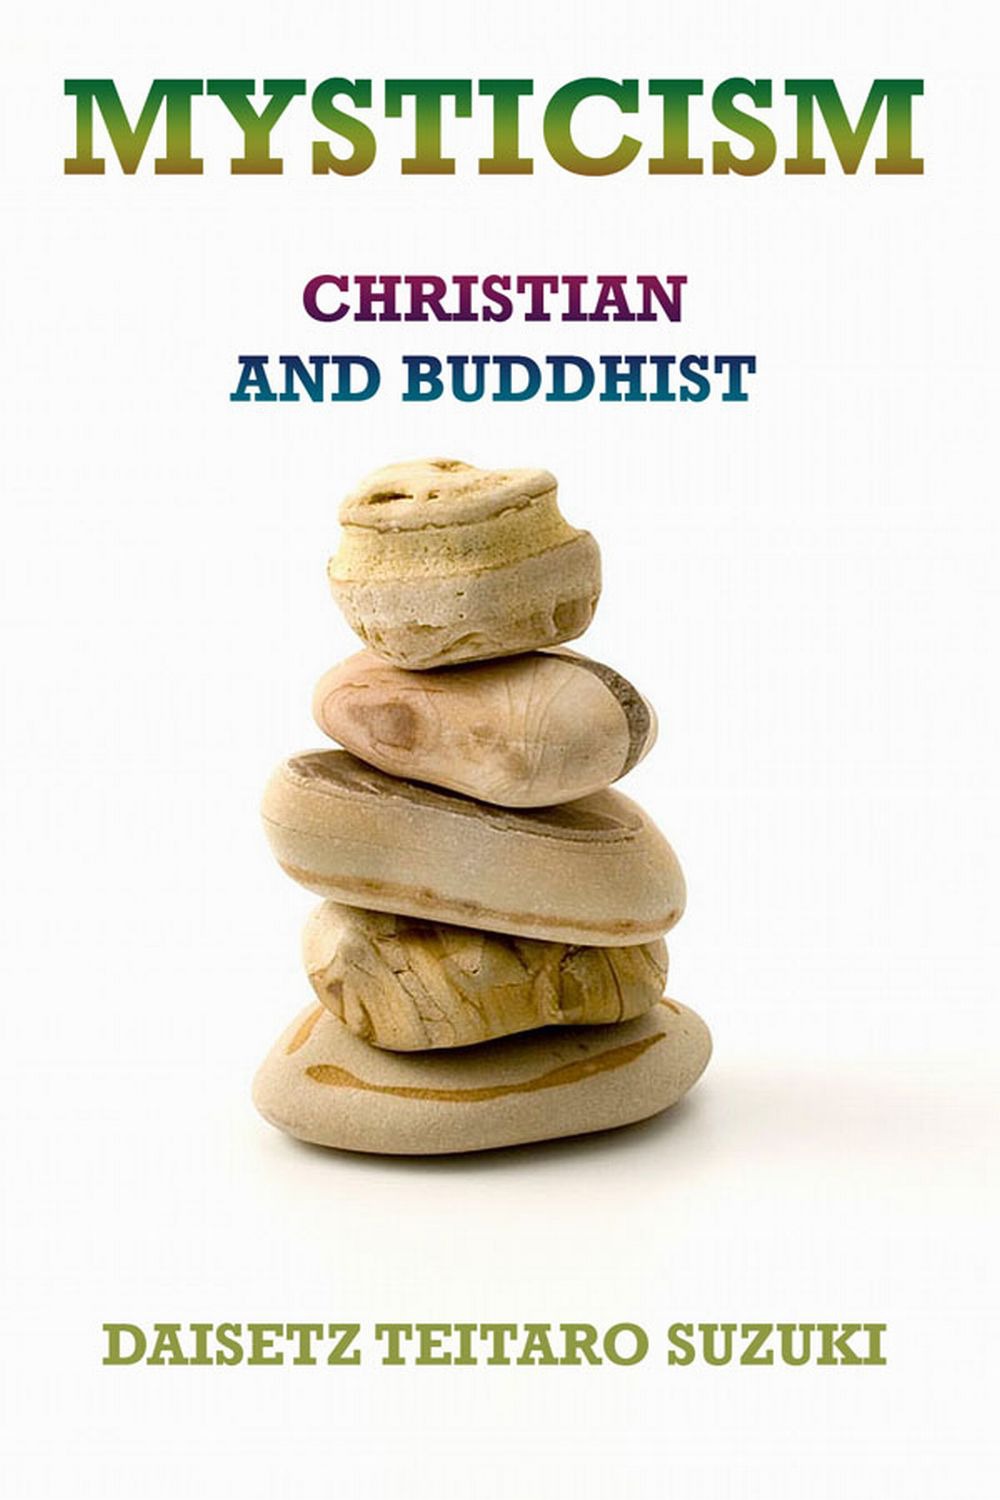 Mysticism, Christian and Buddhist - Daisetz Teitaro Suzuki